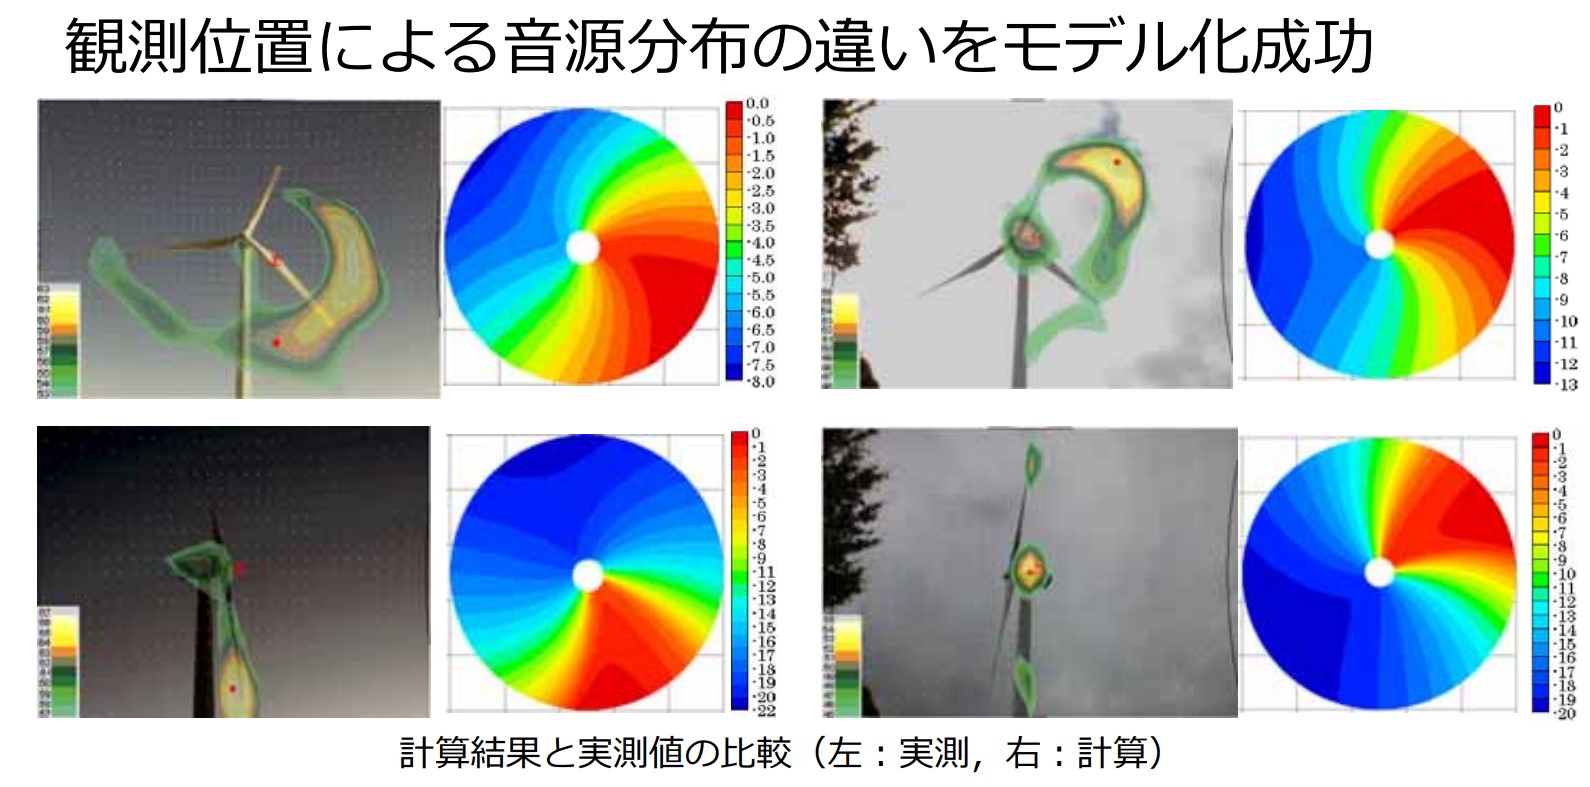 マイクロフォンアレイが捉えた運転中の風車が発生する音を可視化した画像